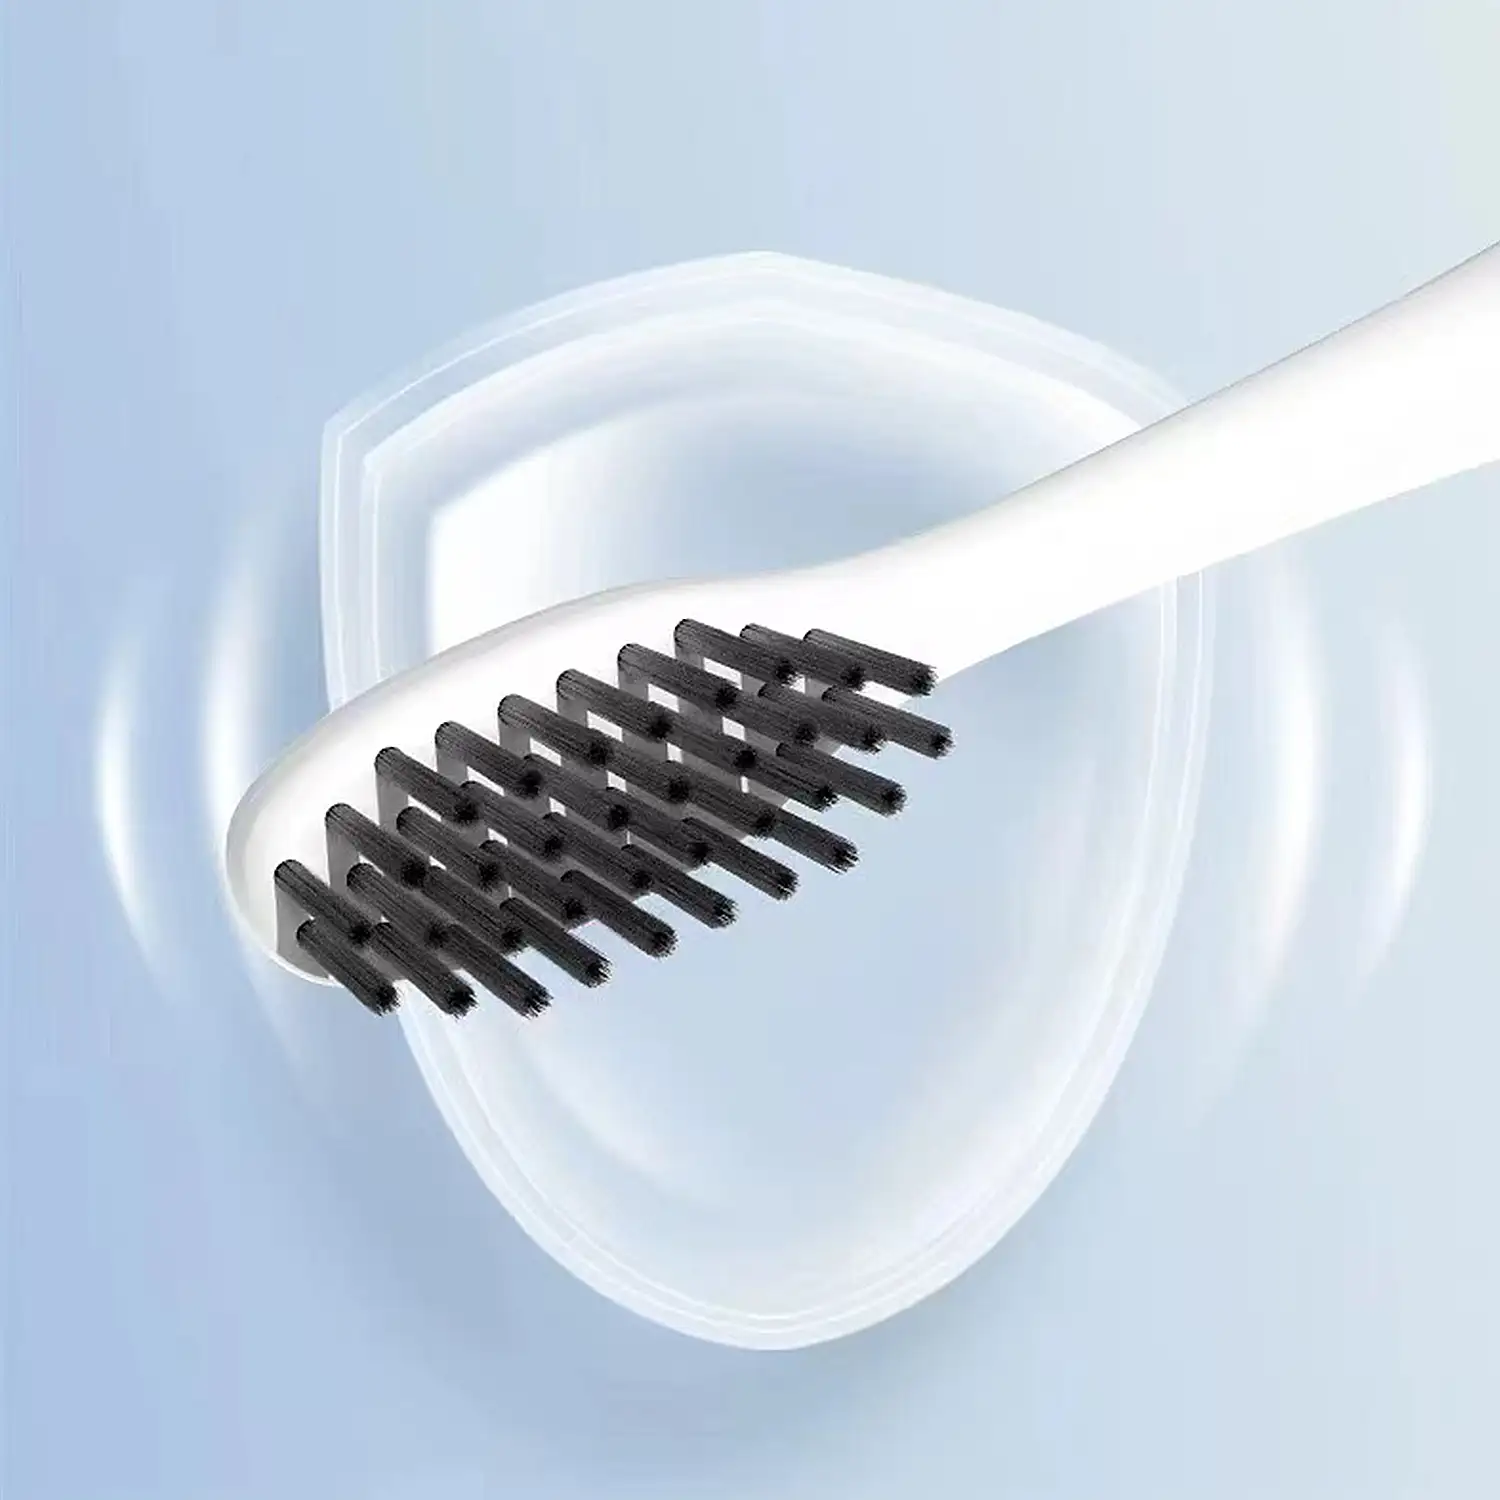 Cepillo de dientes con forma de lápiz para adultos con 5 funciones para tu salud y belleza bucal.
(Modelo recargable)